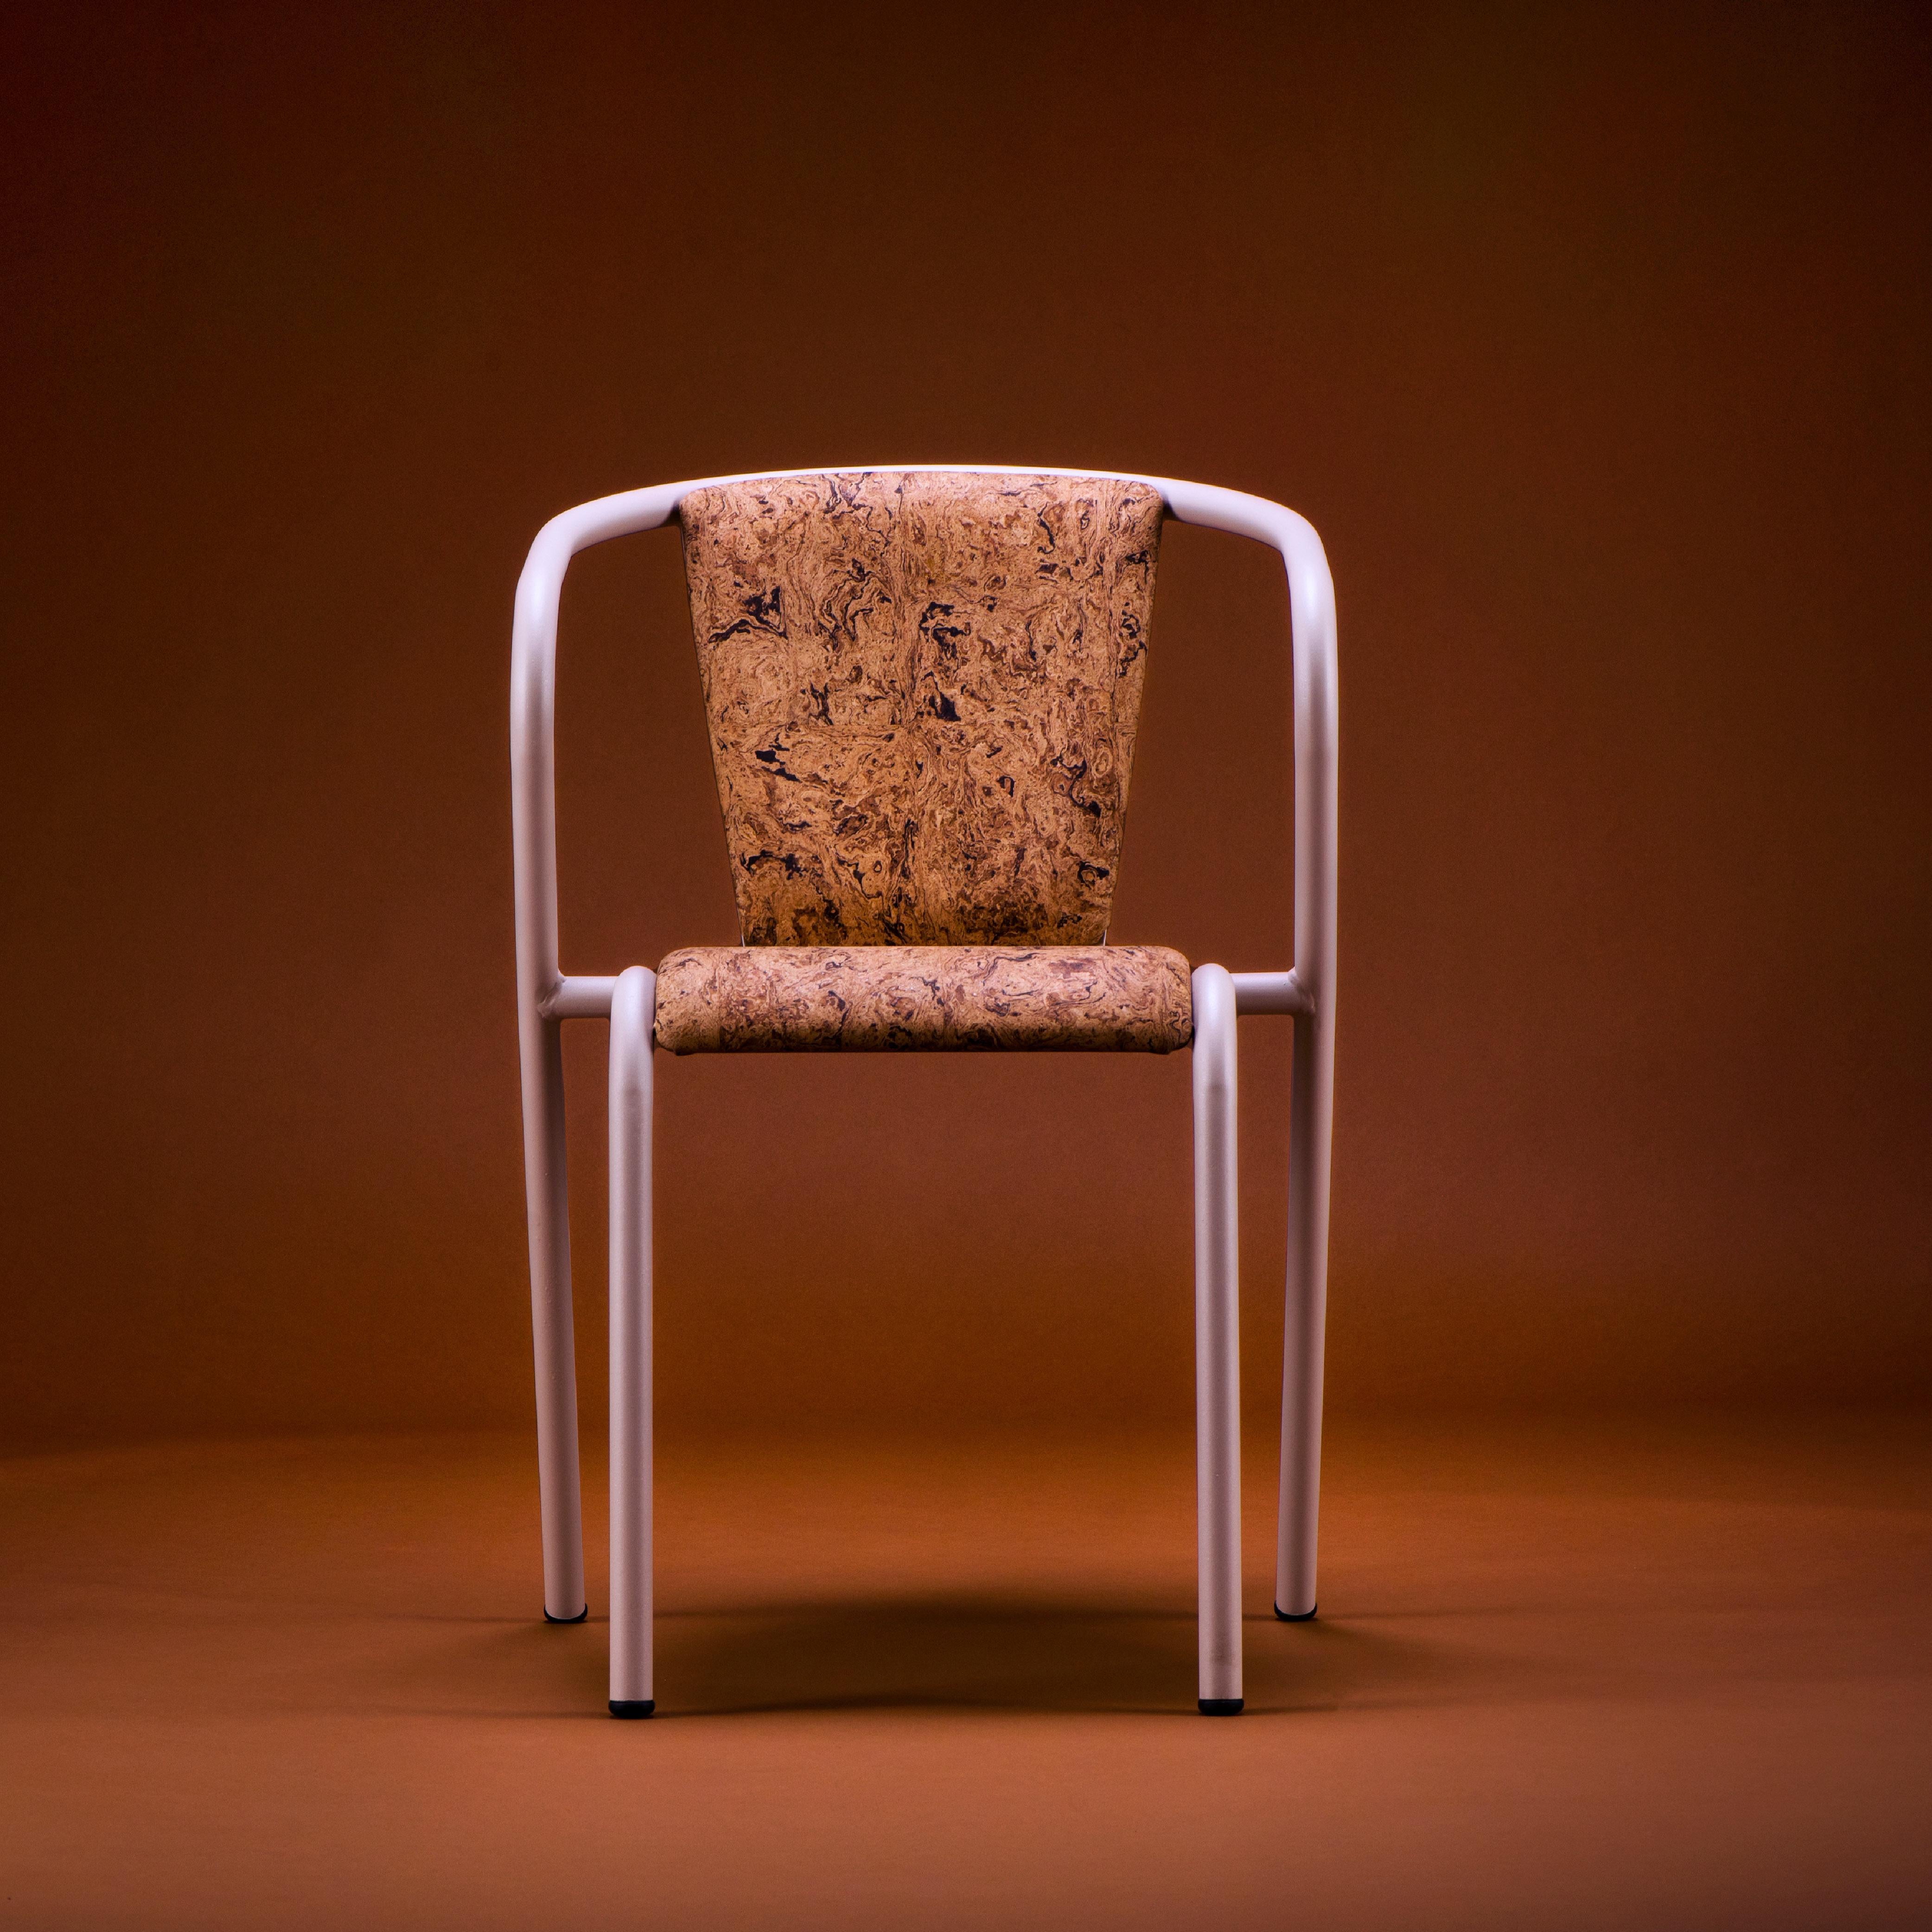 BICAchair est un fauteuil de salle à manger empilable et durable en acier recyclé et recyclable, fini avec notre sélection de couleurs de revêtement en poudre de première qualité, dans ce cas dans une couleur Crème texturée, qui transforme un